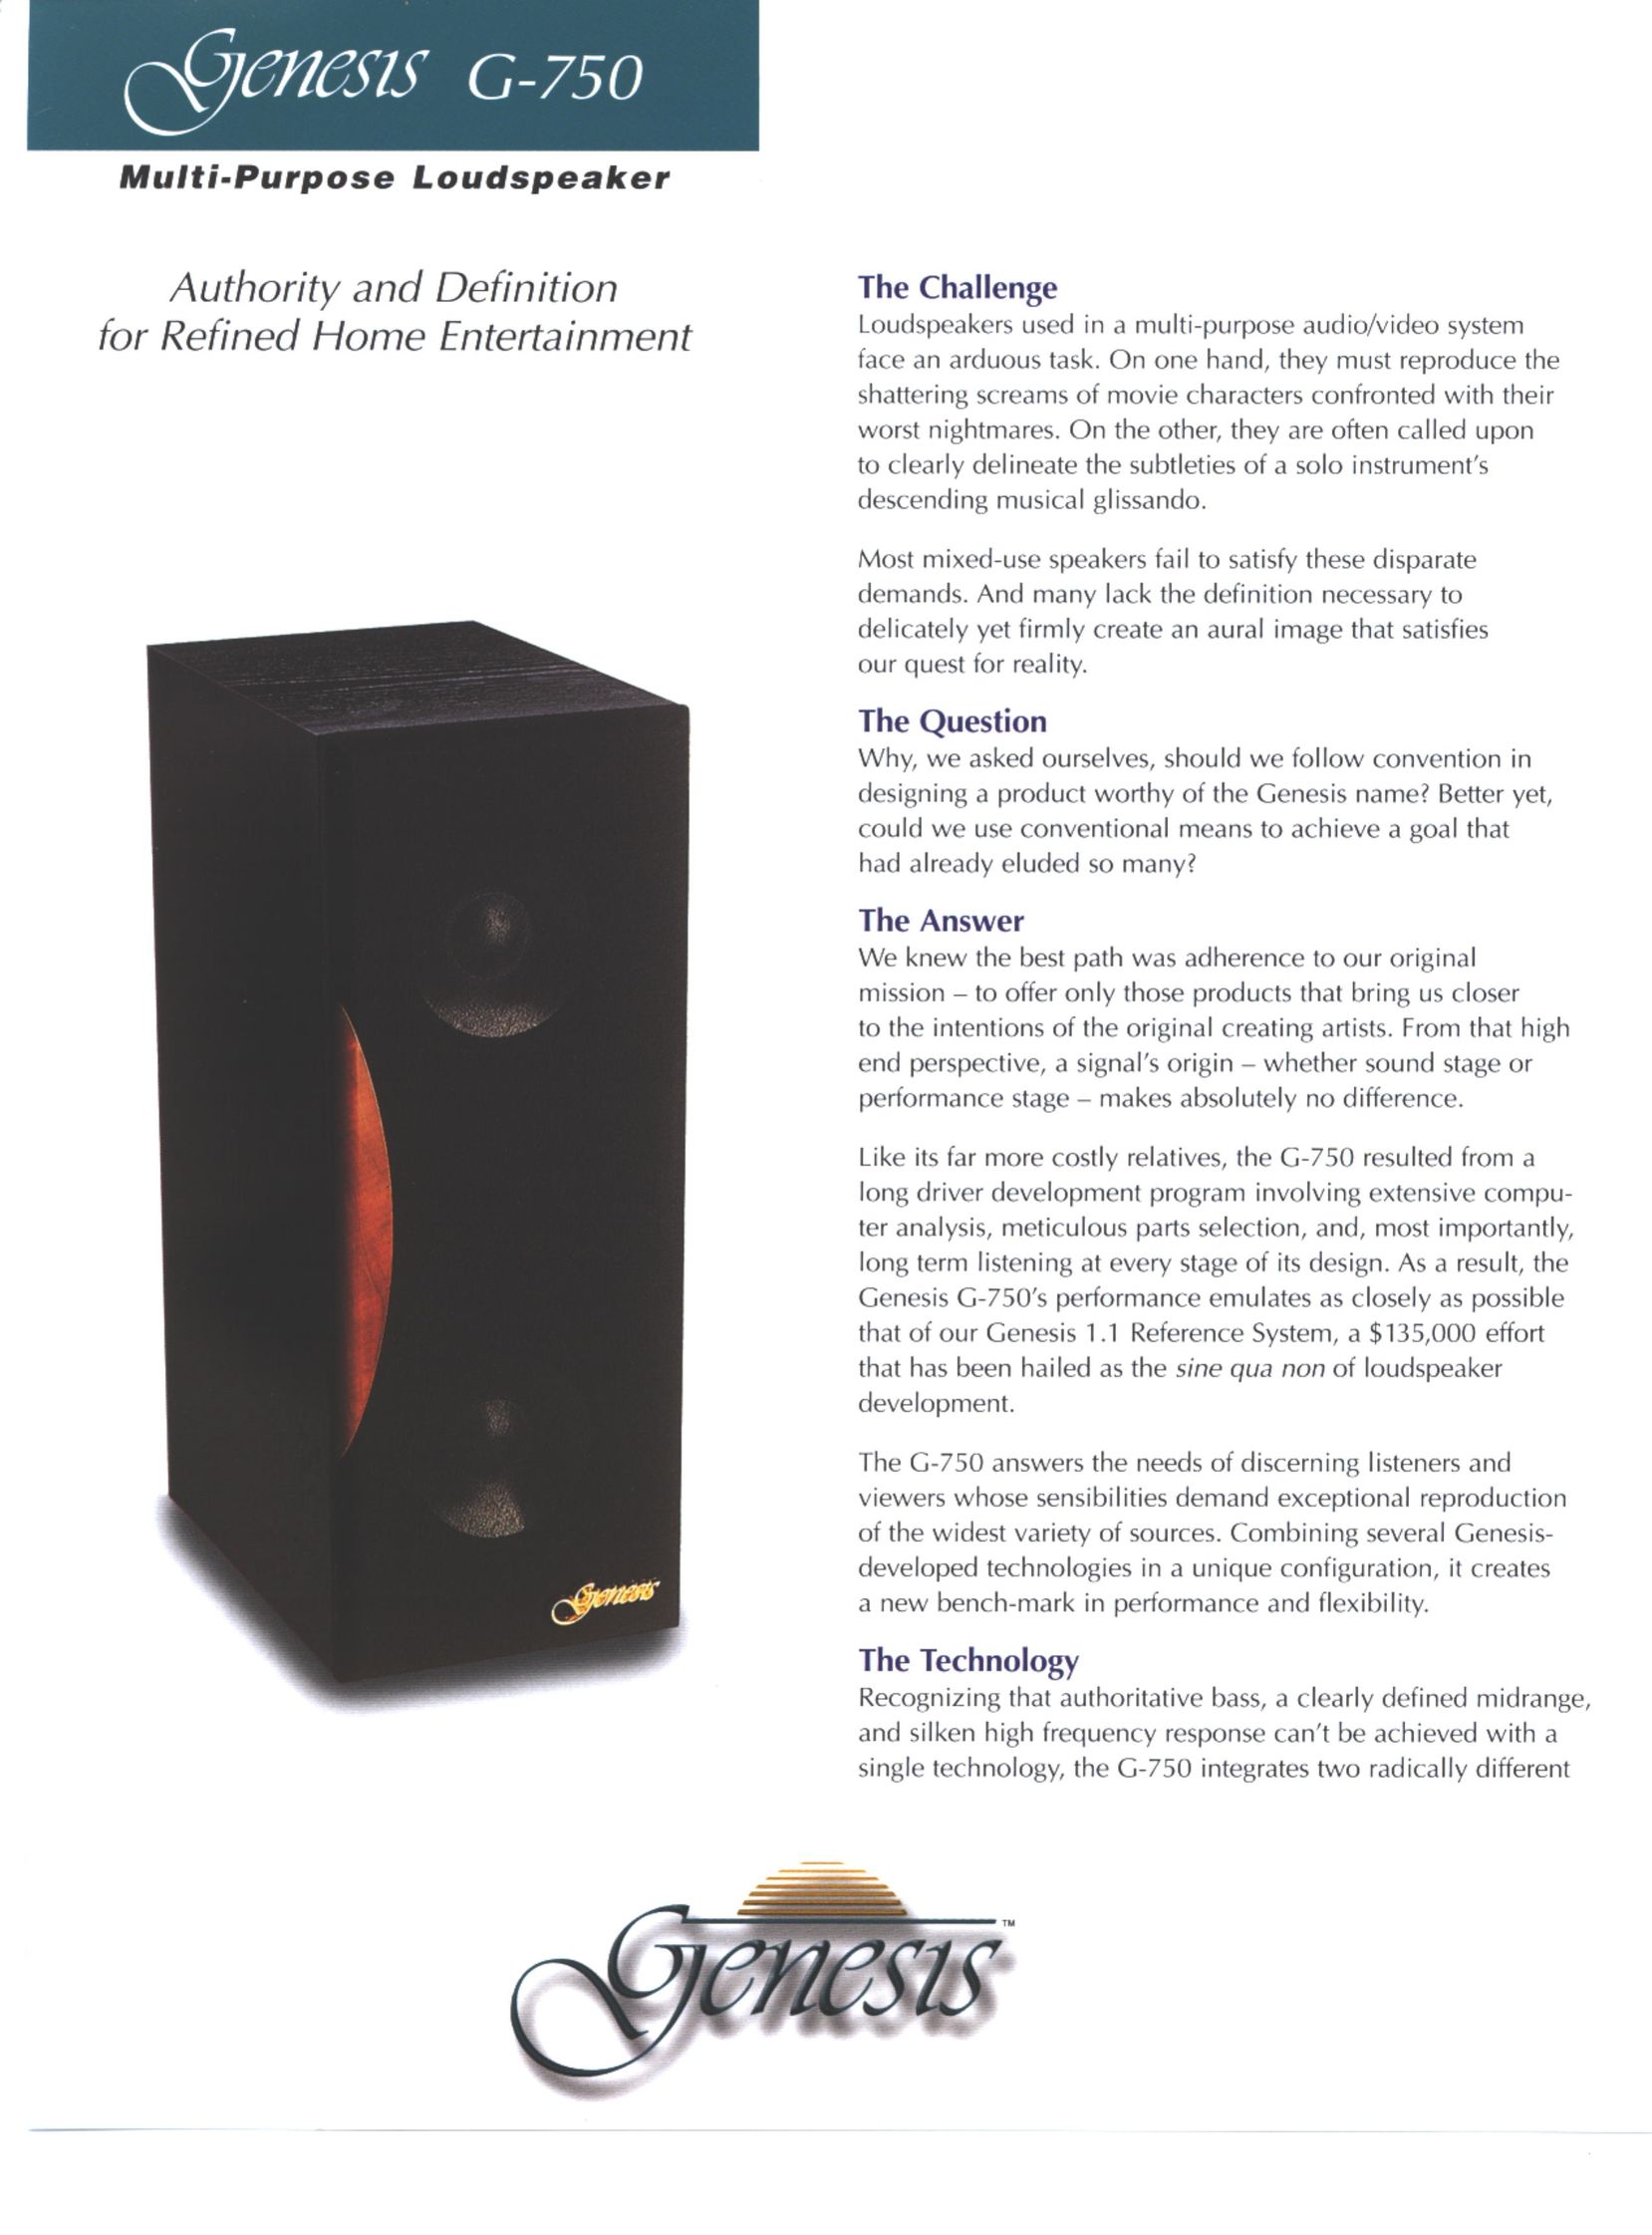 Genesis Advanced Technologies Gen 750 Speaker User Manual